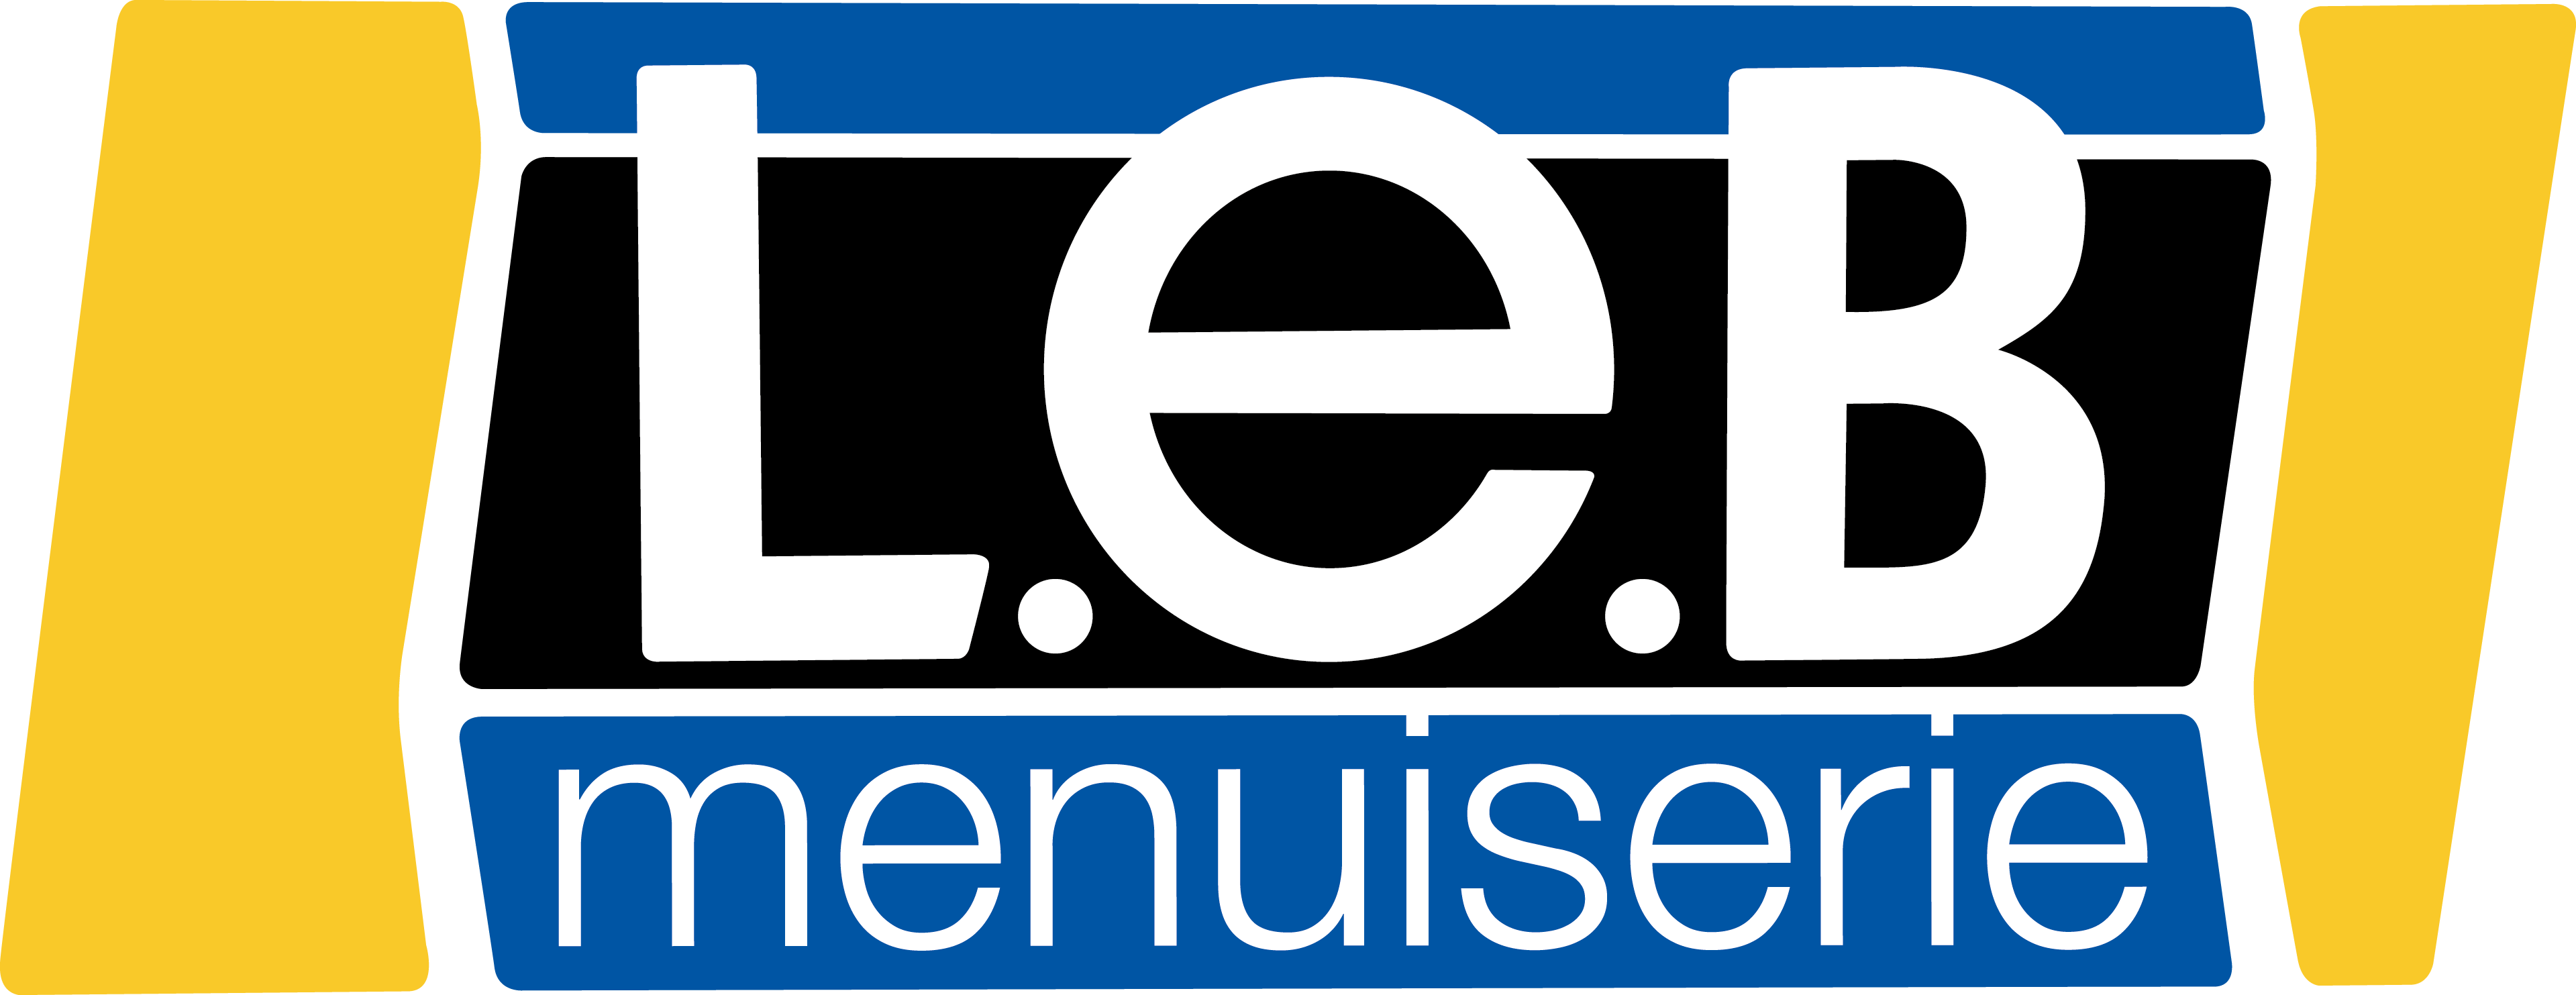 logo_LEB